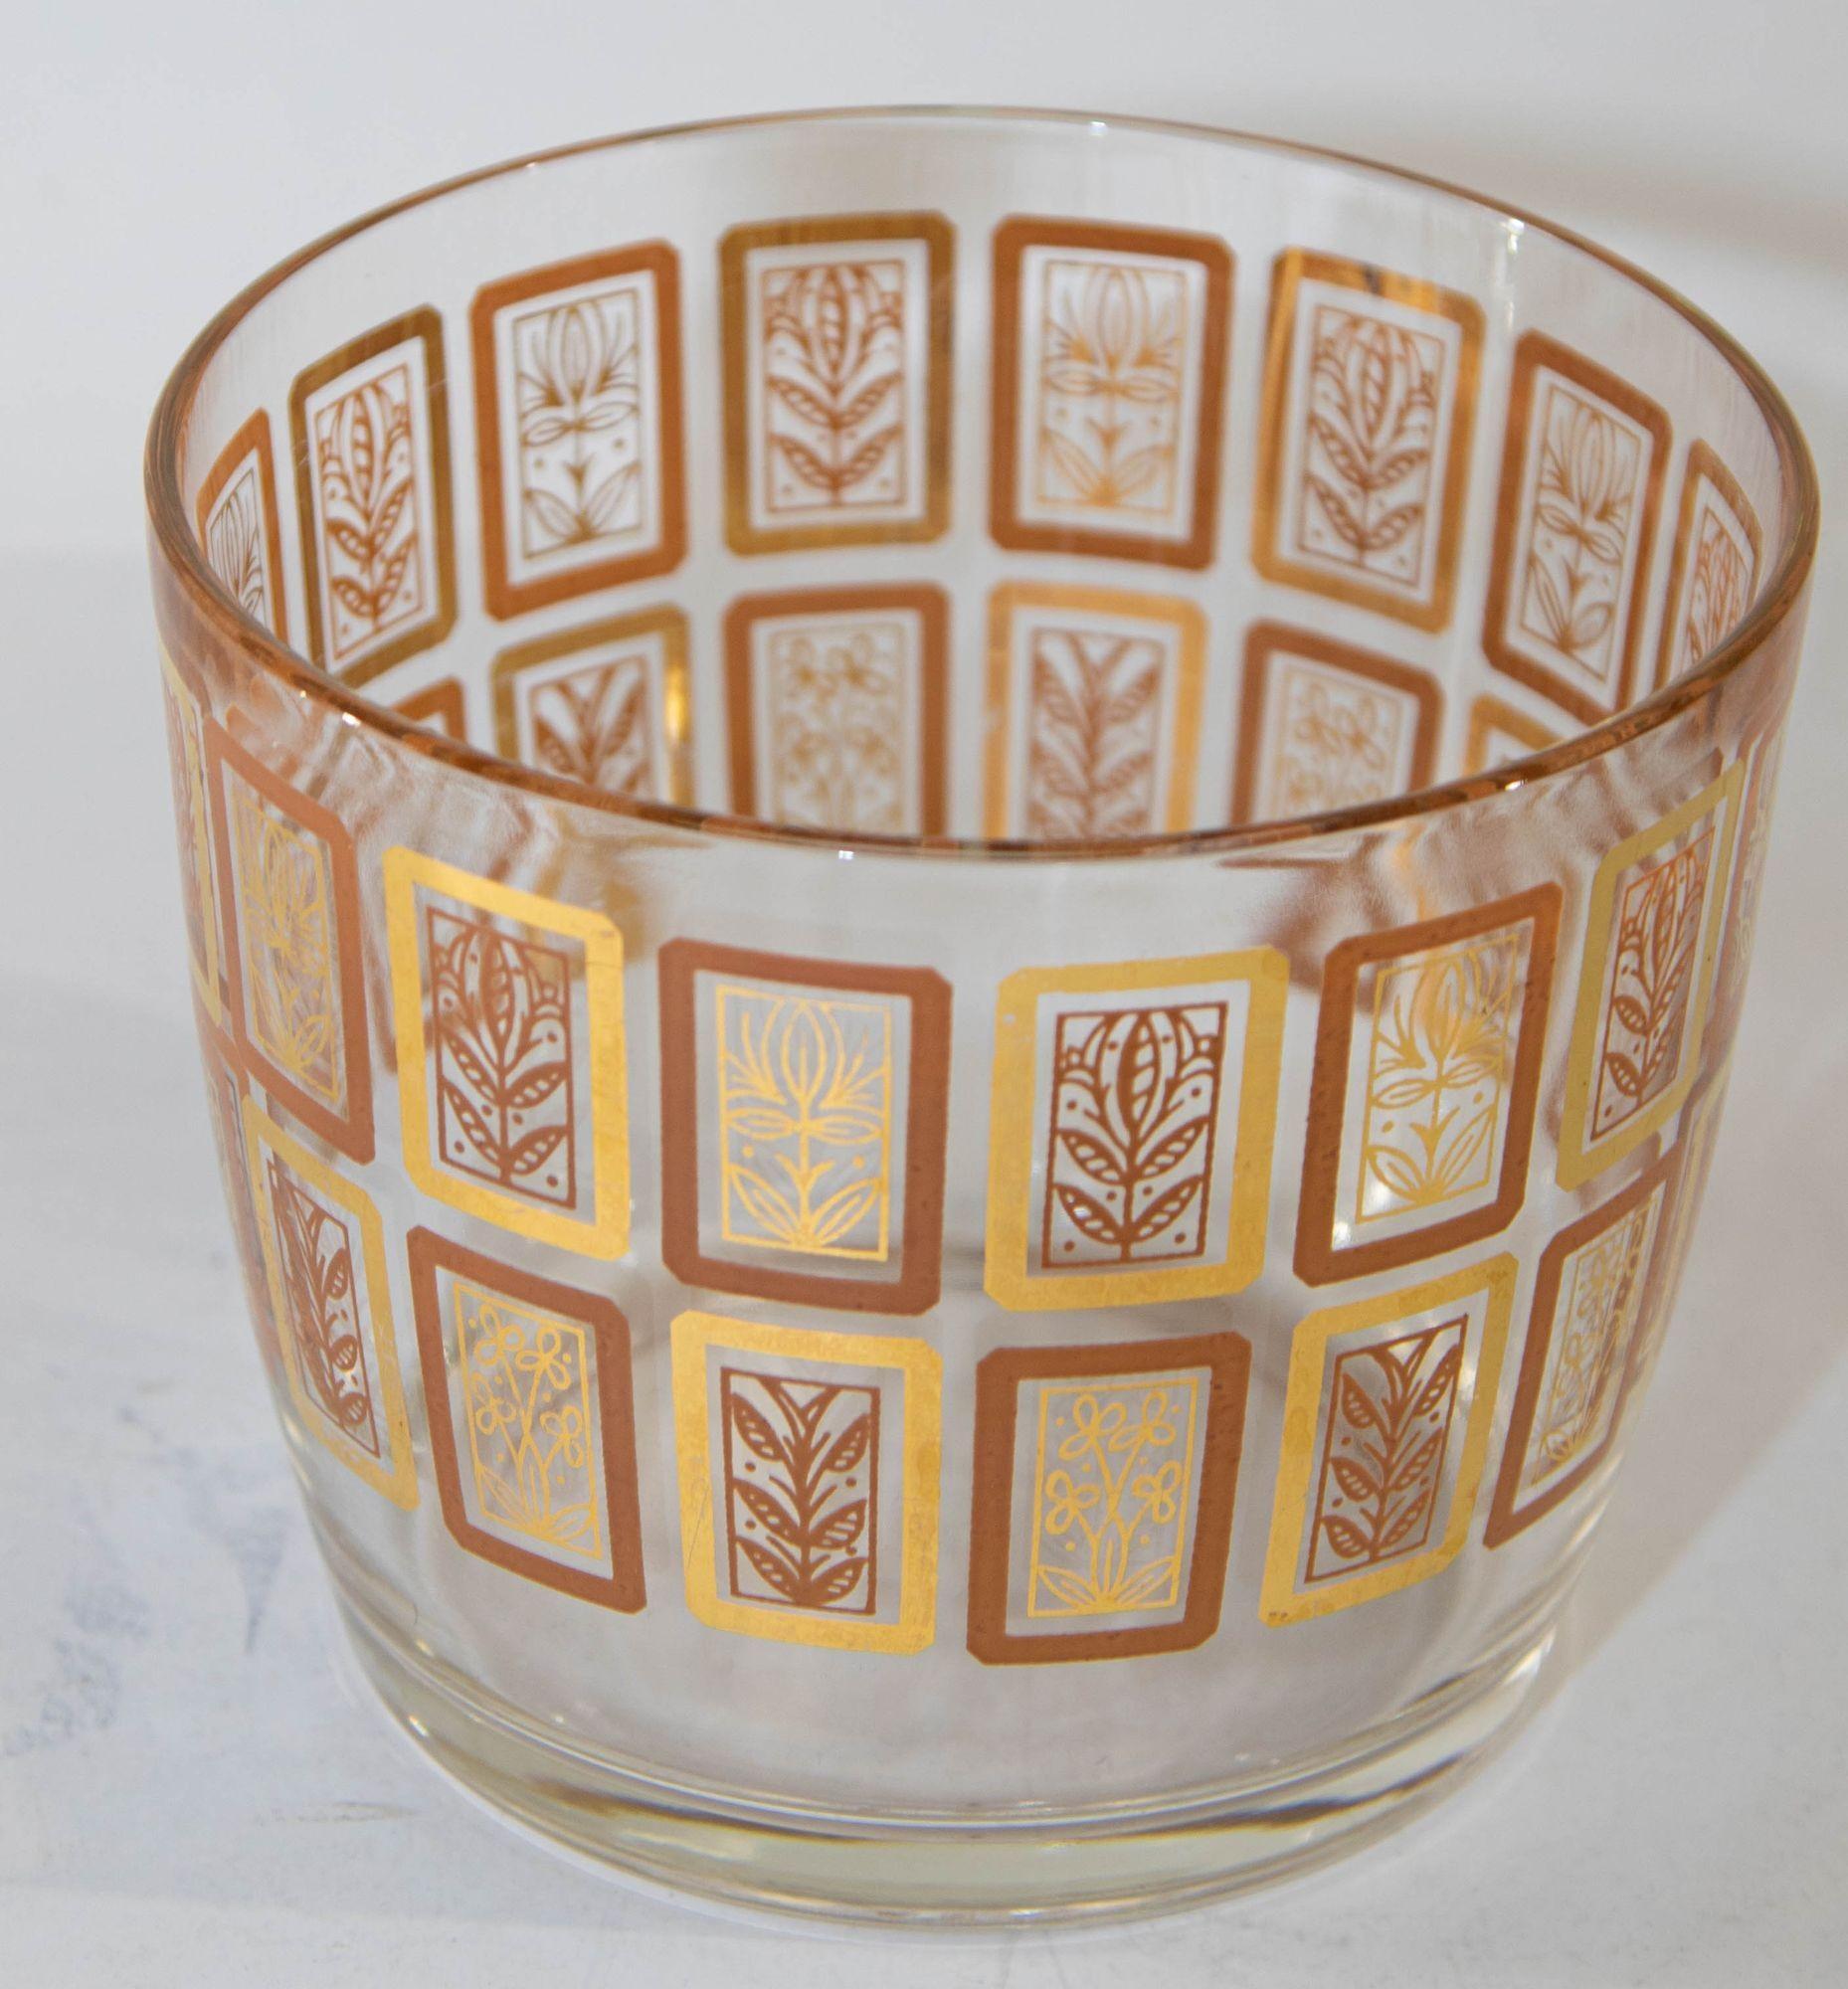 Vintage Hazel-Atlas LOTUS Ice Bowl Bucket Clear Glass with Gold and Pink Leaf Design Mid Century Modern.
Cet amusant seau à glace circulaire en verre Lotus Autumnal vintage du milieu du siècle dernier présente un motif floral dans des couleurs